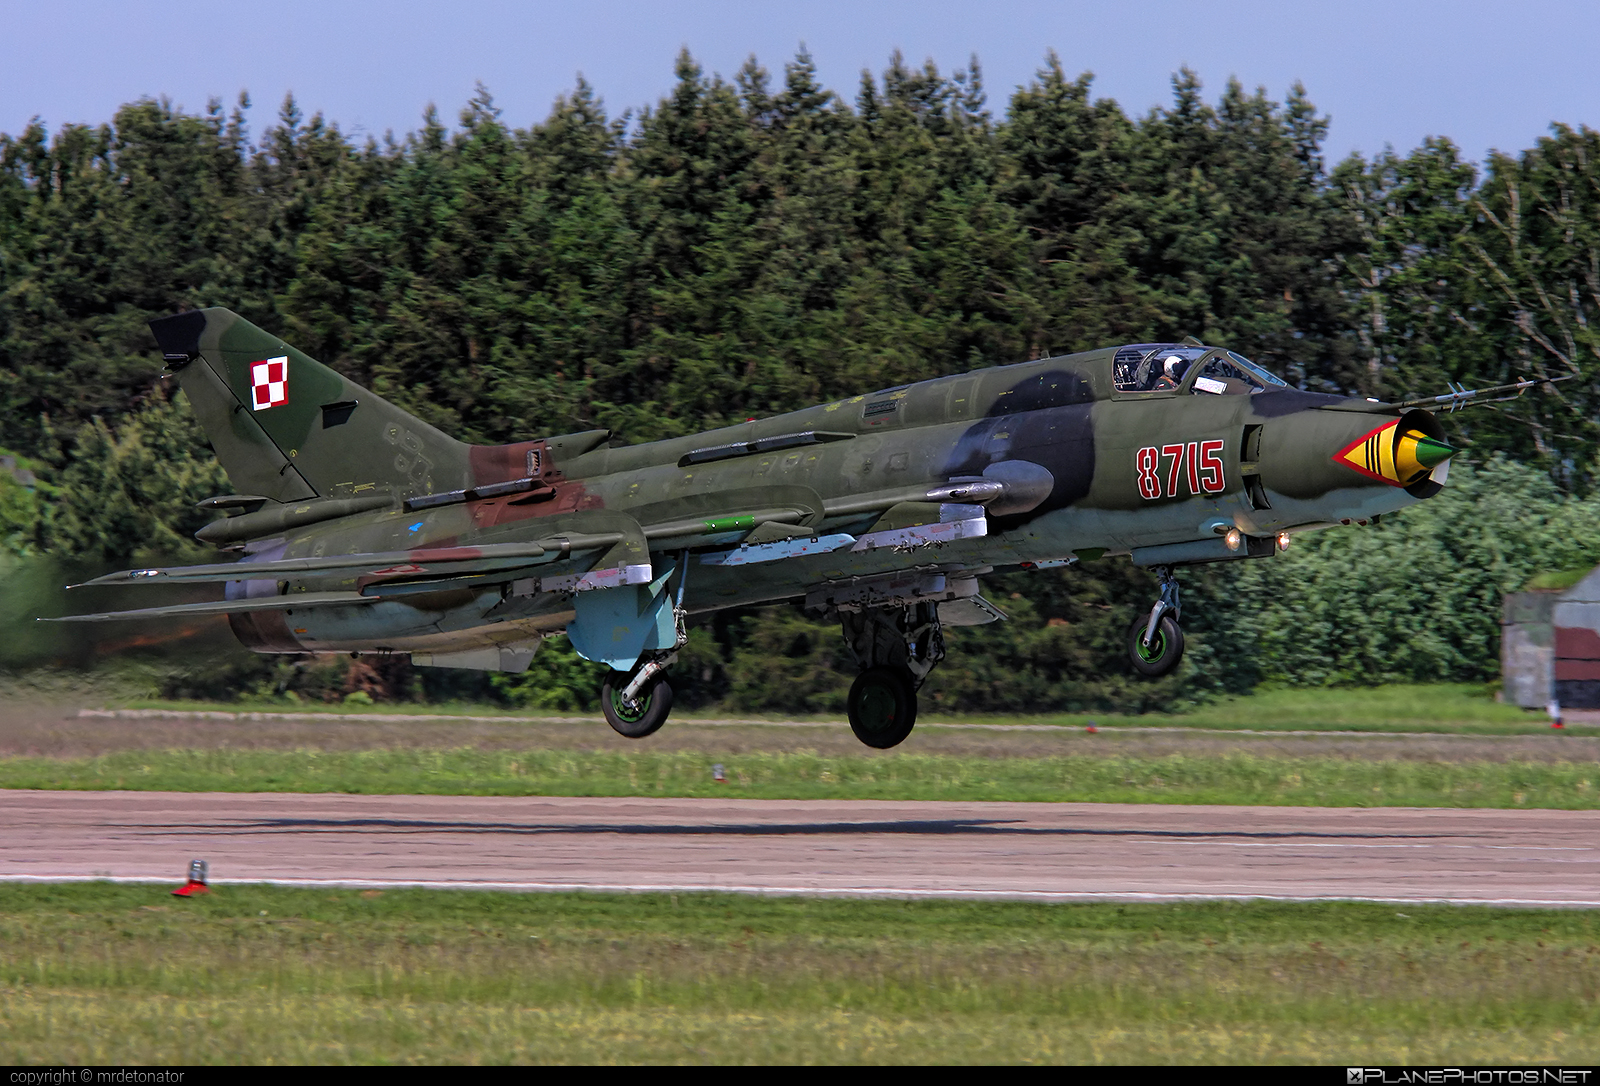 Sukhoi Su-22M4 - 8715 operated by Siły Powietrzne Rzeczypospolitej Polskiej (Polish Air Force) #polishairforce #silypowietrzne #su22 #su22m4 #sukhoi #sukhoi22 #sukhoi22m4 #sukhoisu22 #sukhoisu22m4